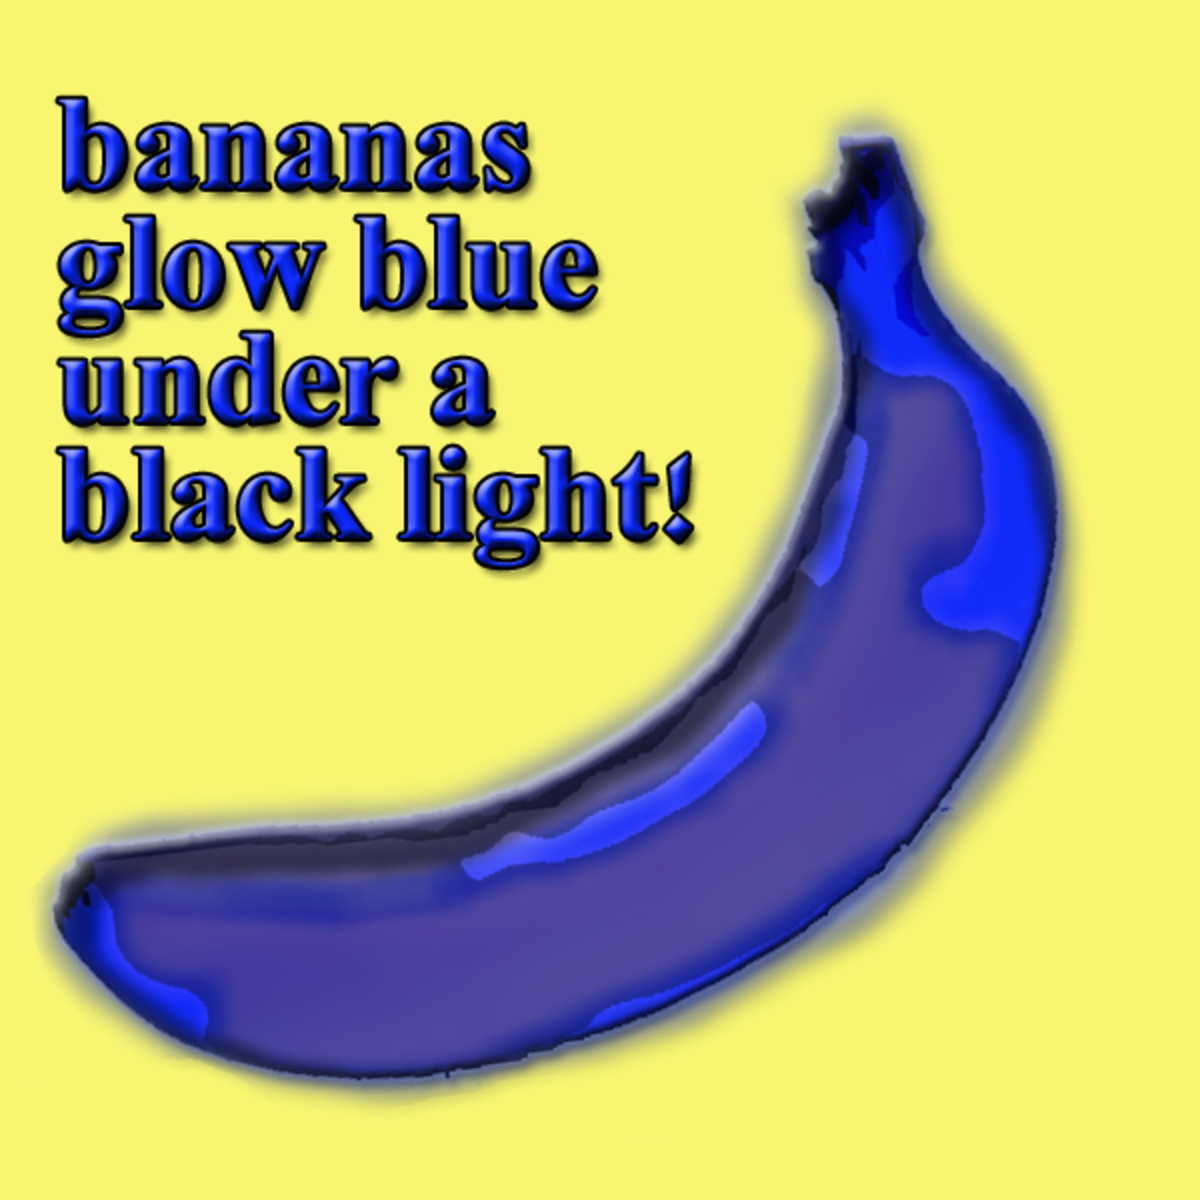 A Blue Banana?